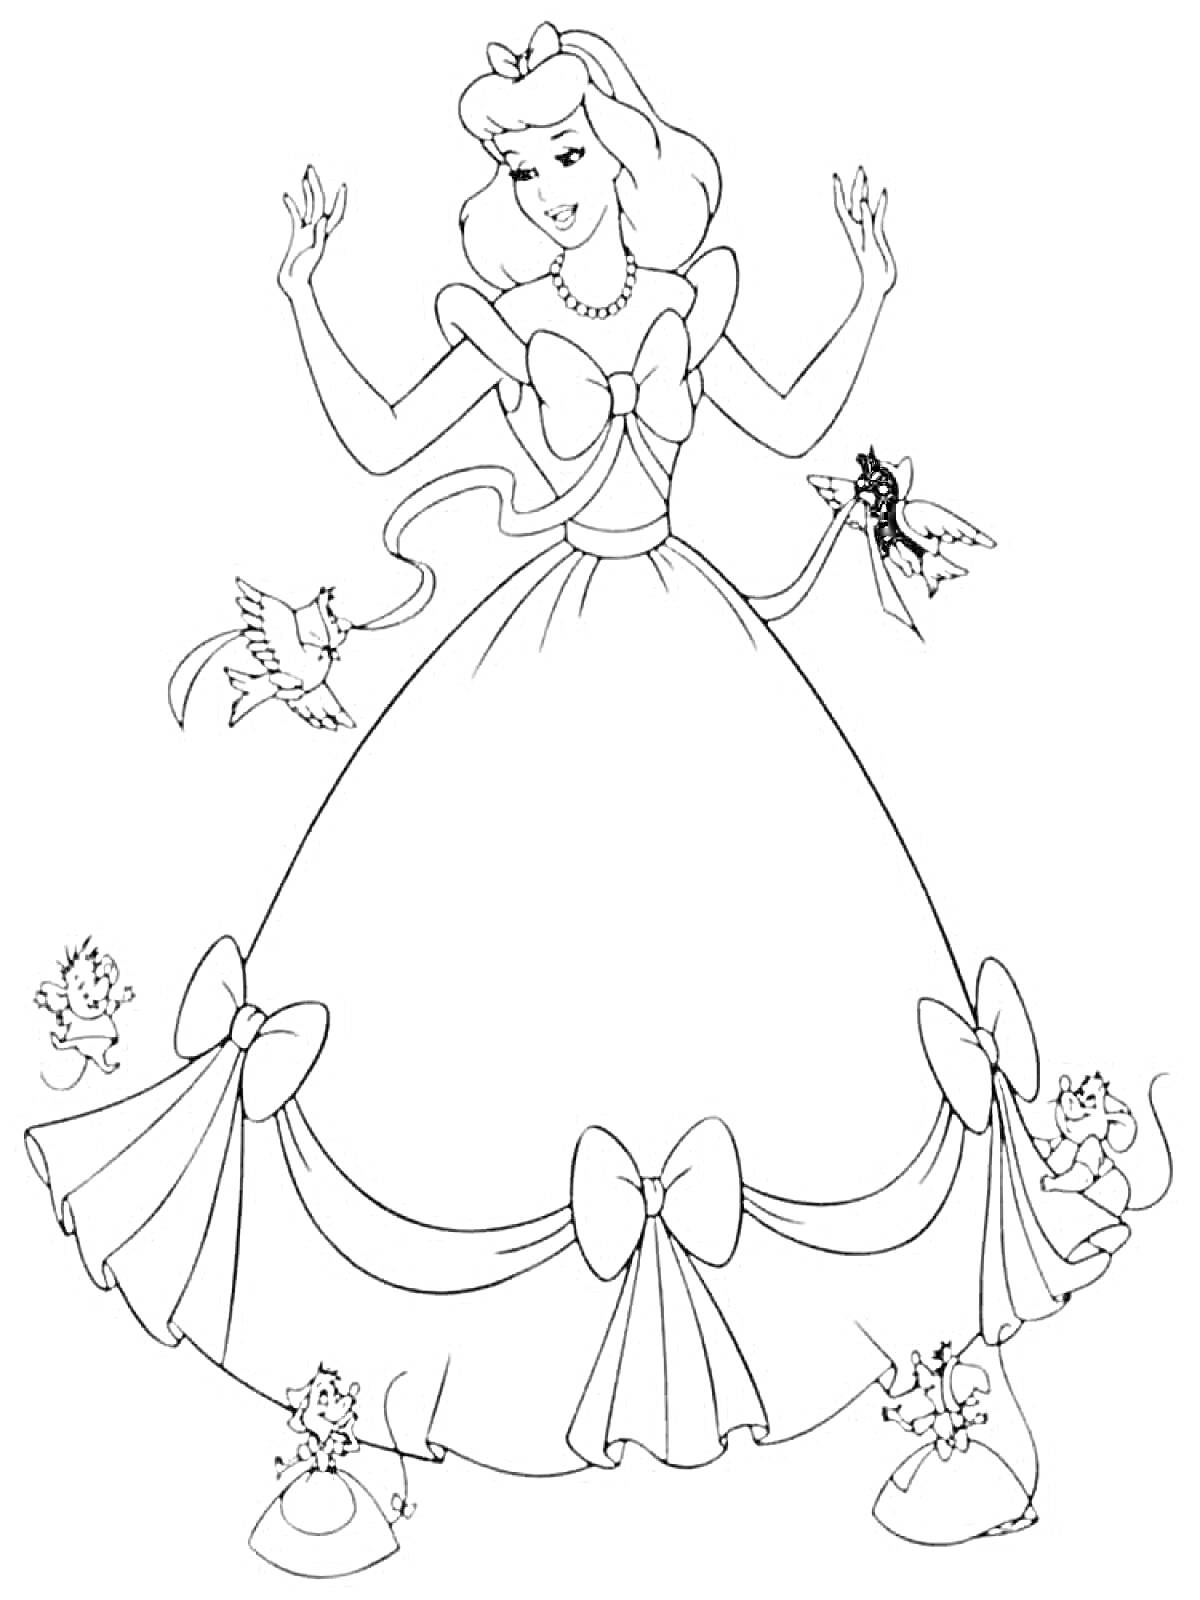 Раскраска Золушка в пышном платье с бантиками, окружённая птицами и мышами